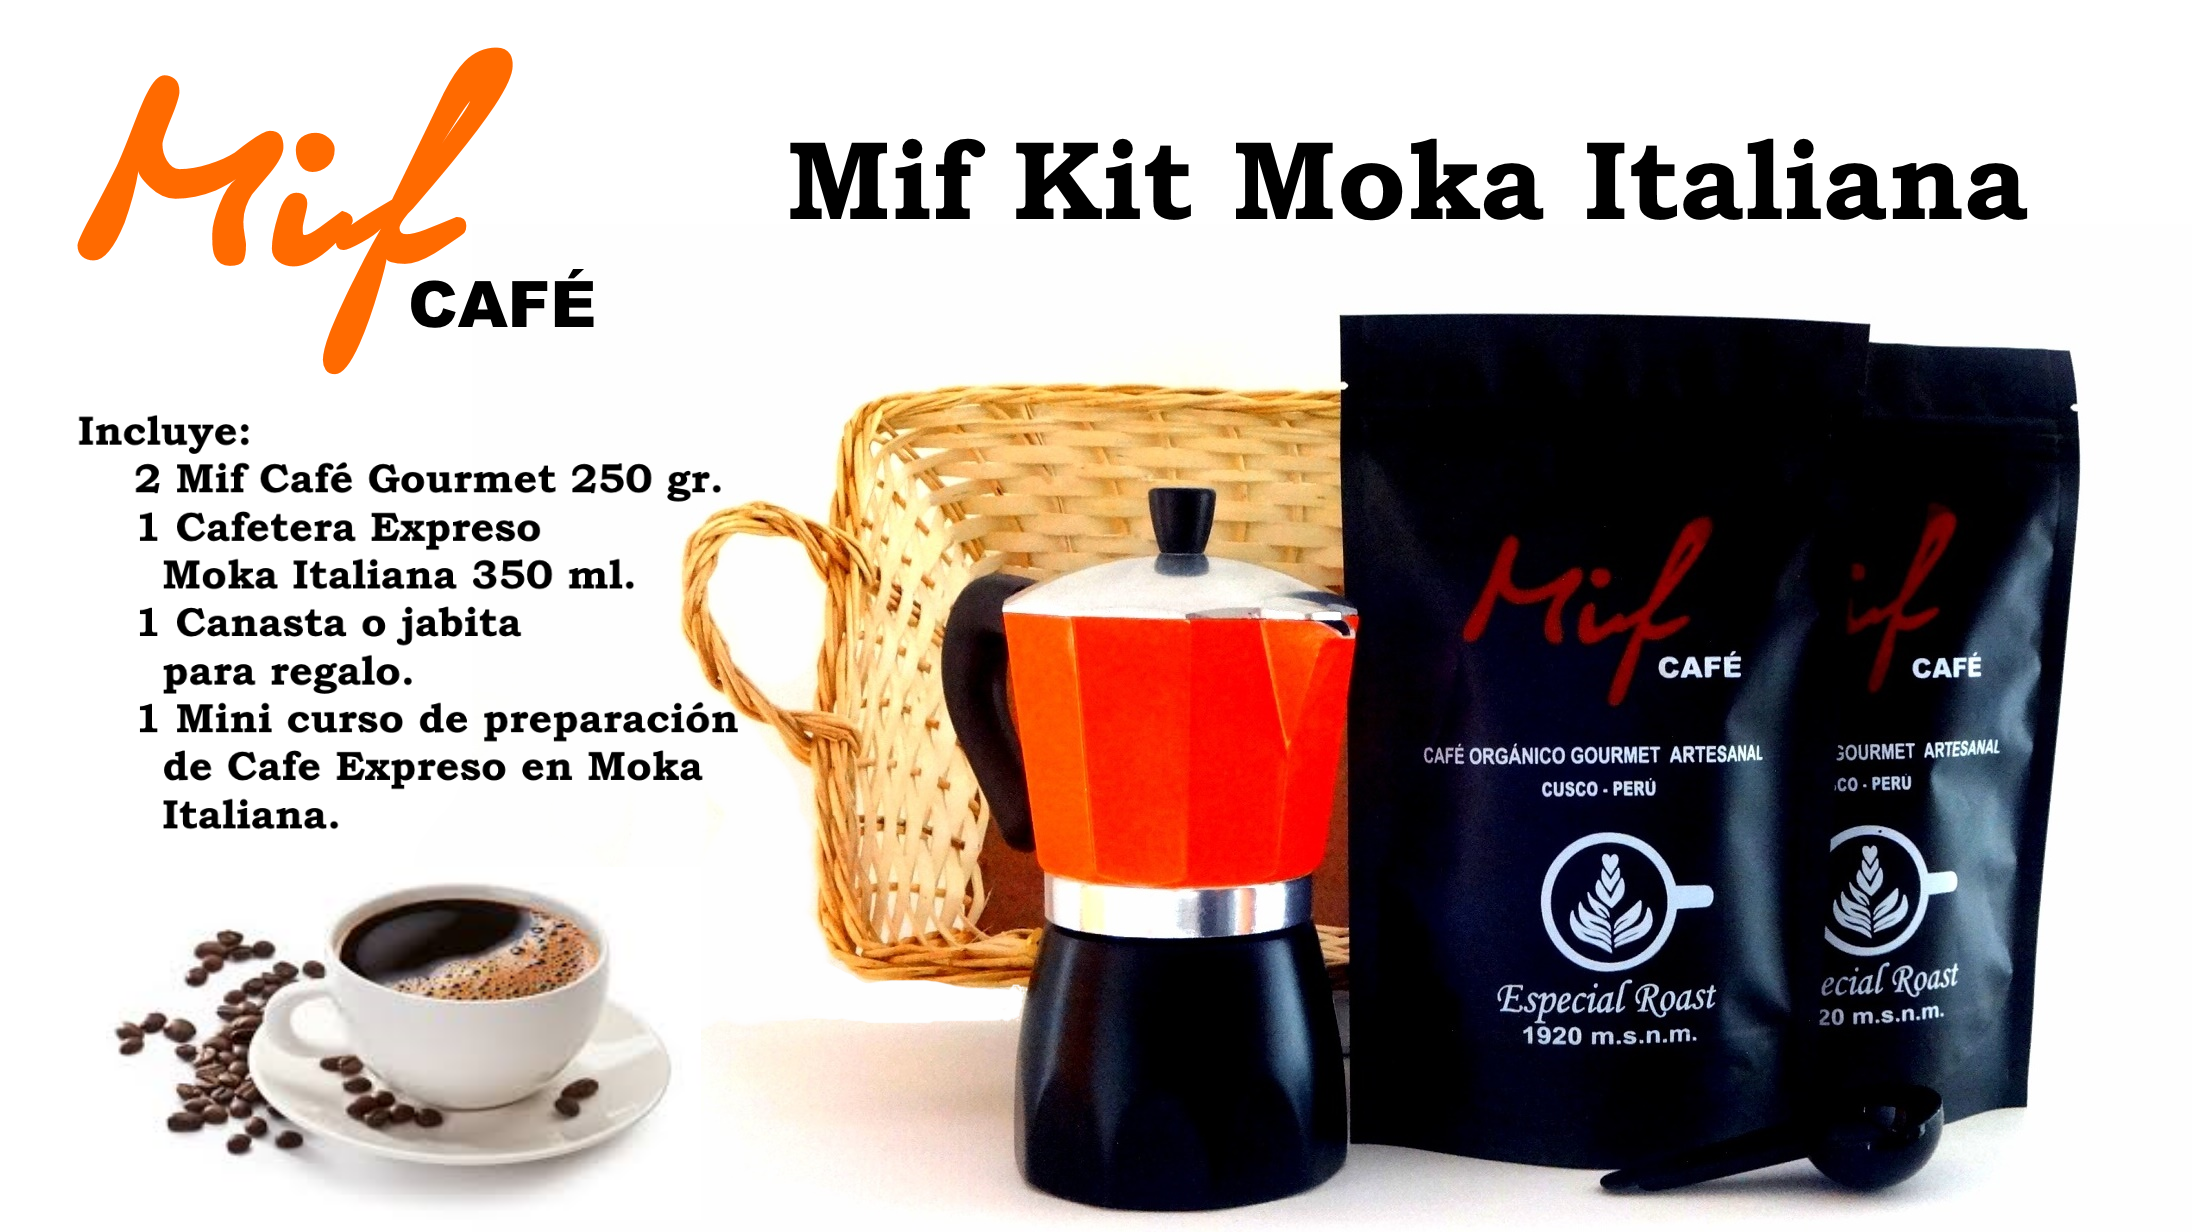 Kit Mif Café Moka Italiana para regalo!